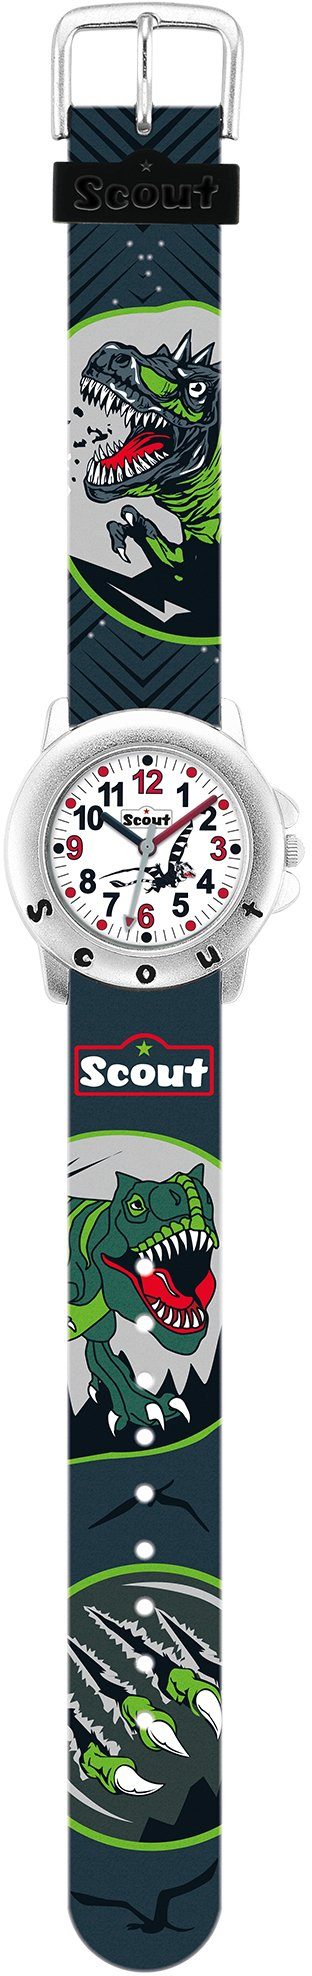 Scout Quarzuhr Star Kids, 280393010, Dinosaurieruhr, Dinosauriermotiv, ideal auch als Geschenk | Quarzuhren